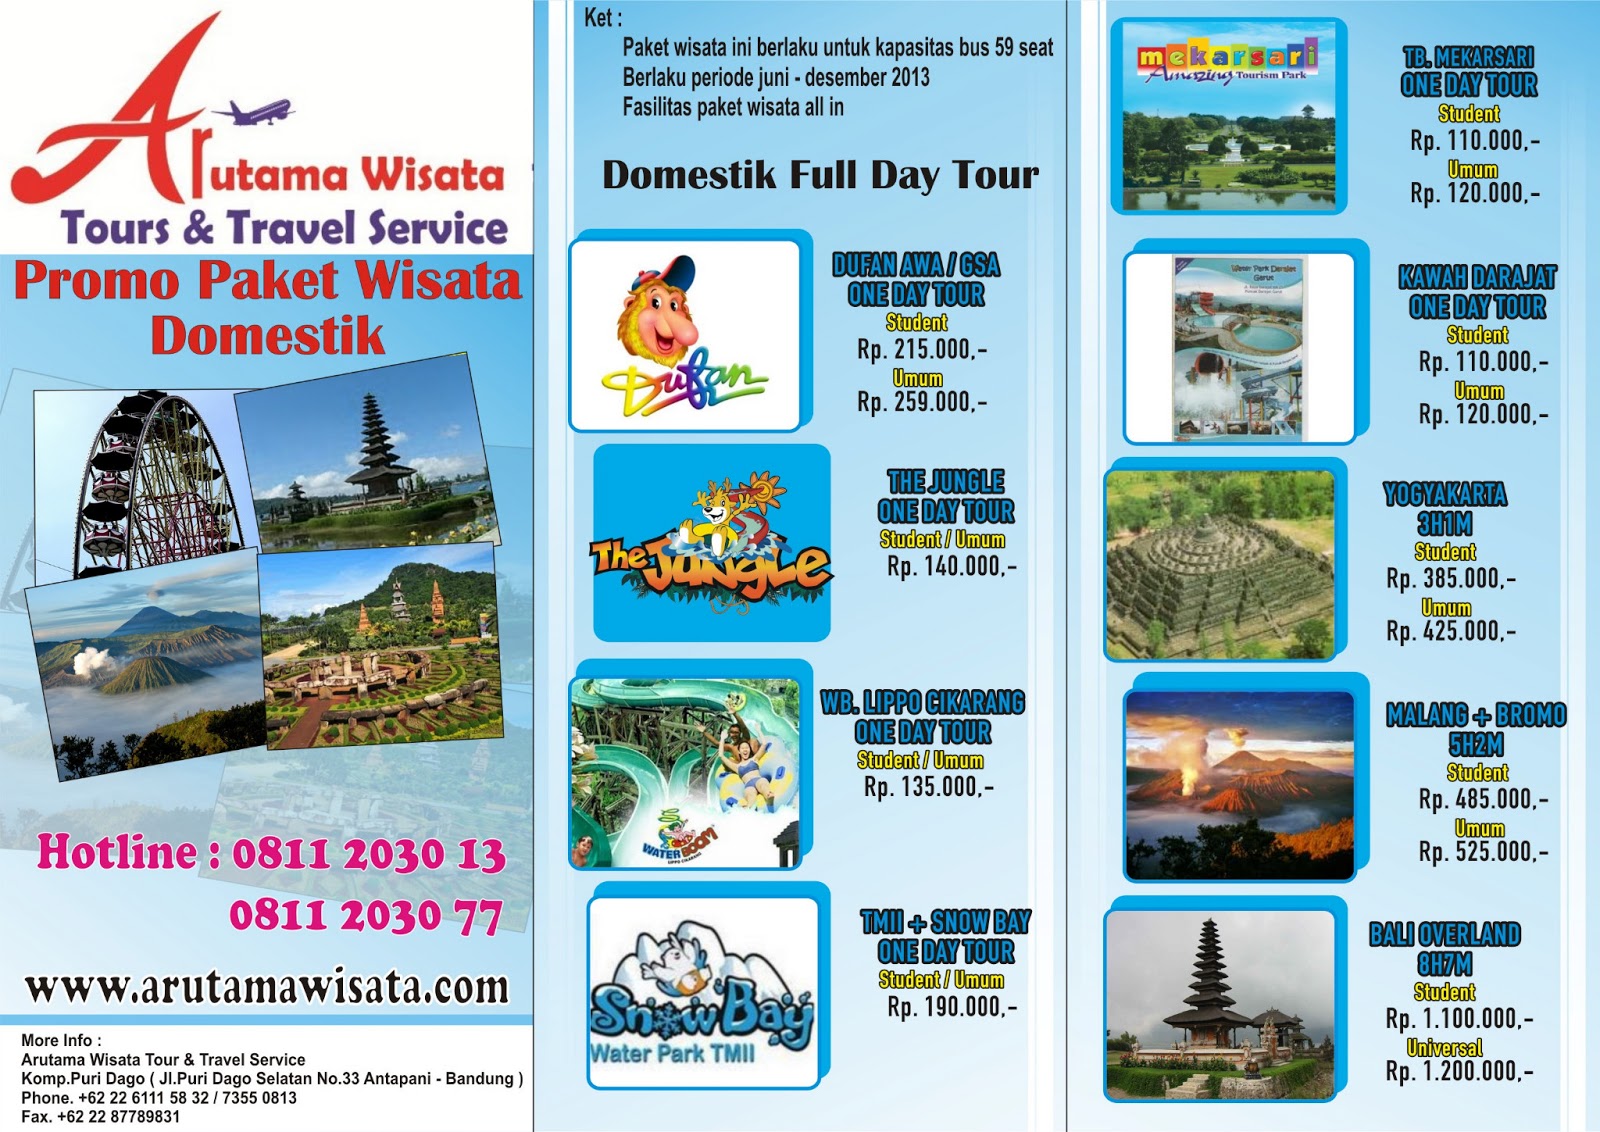 Arutama Wisata Tour & Travel Service: Promo Paket Wisata Domestik 2013